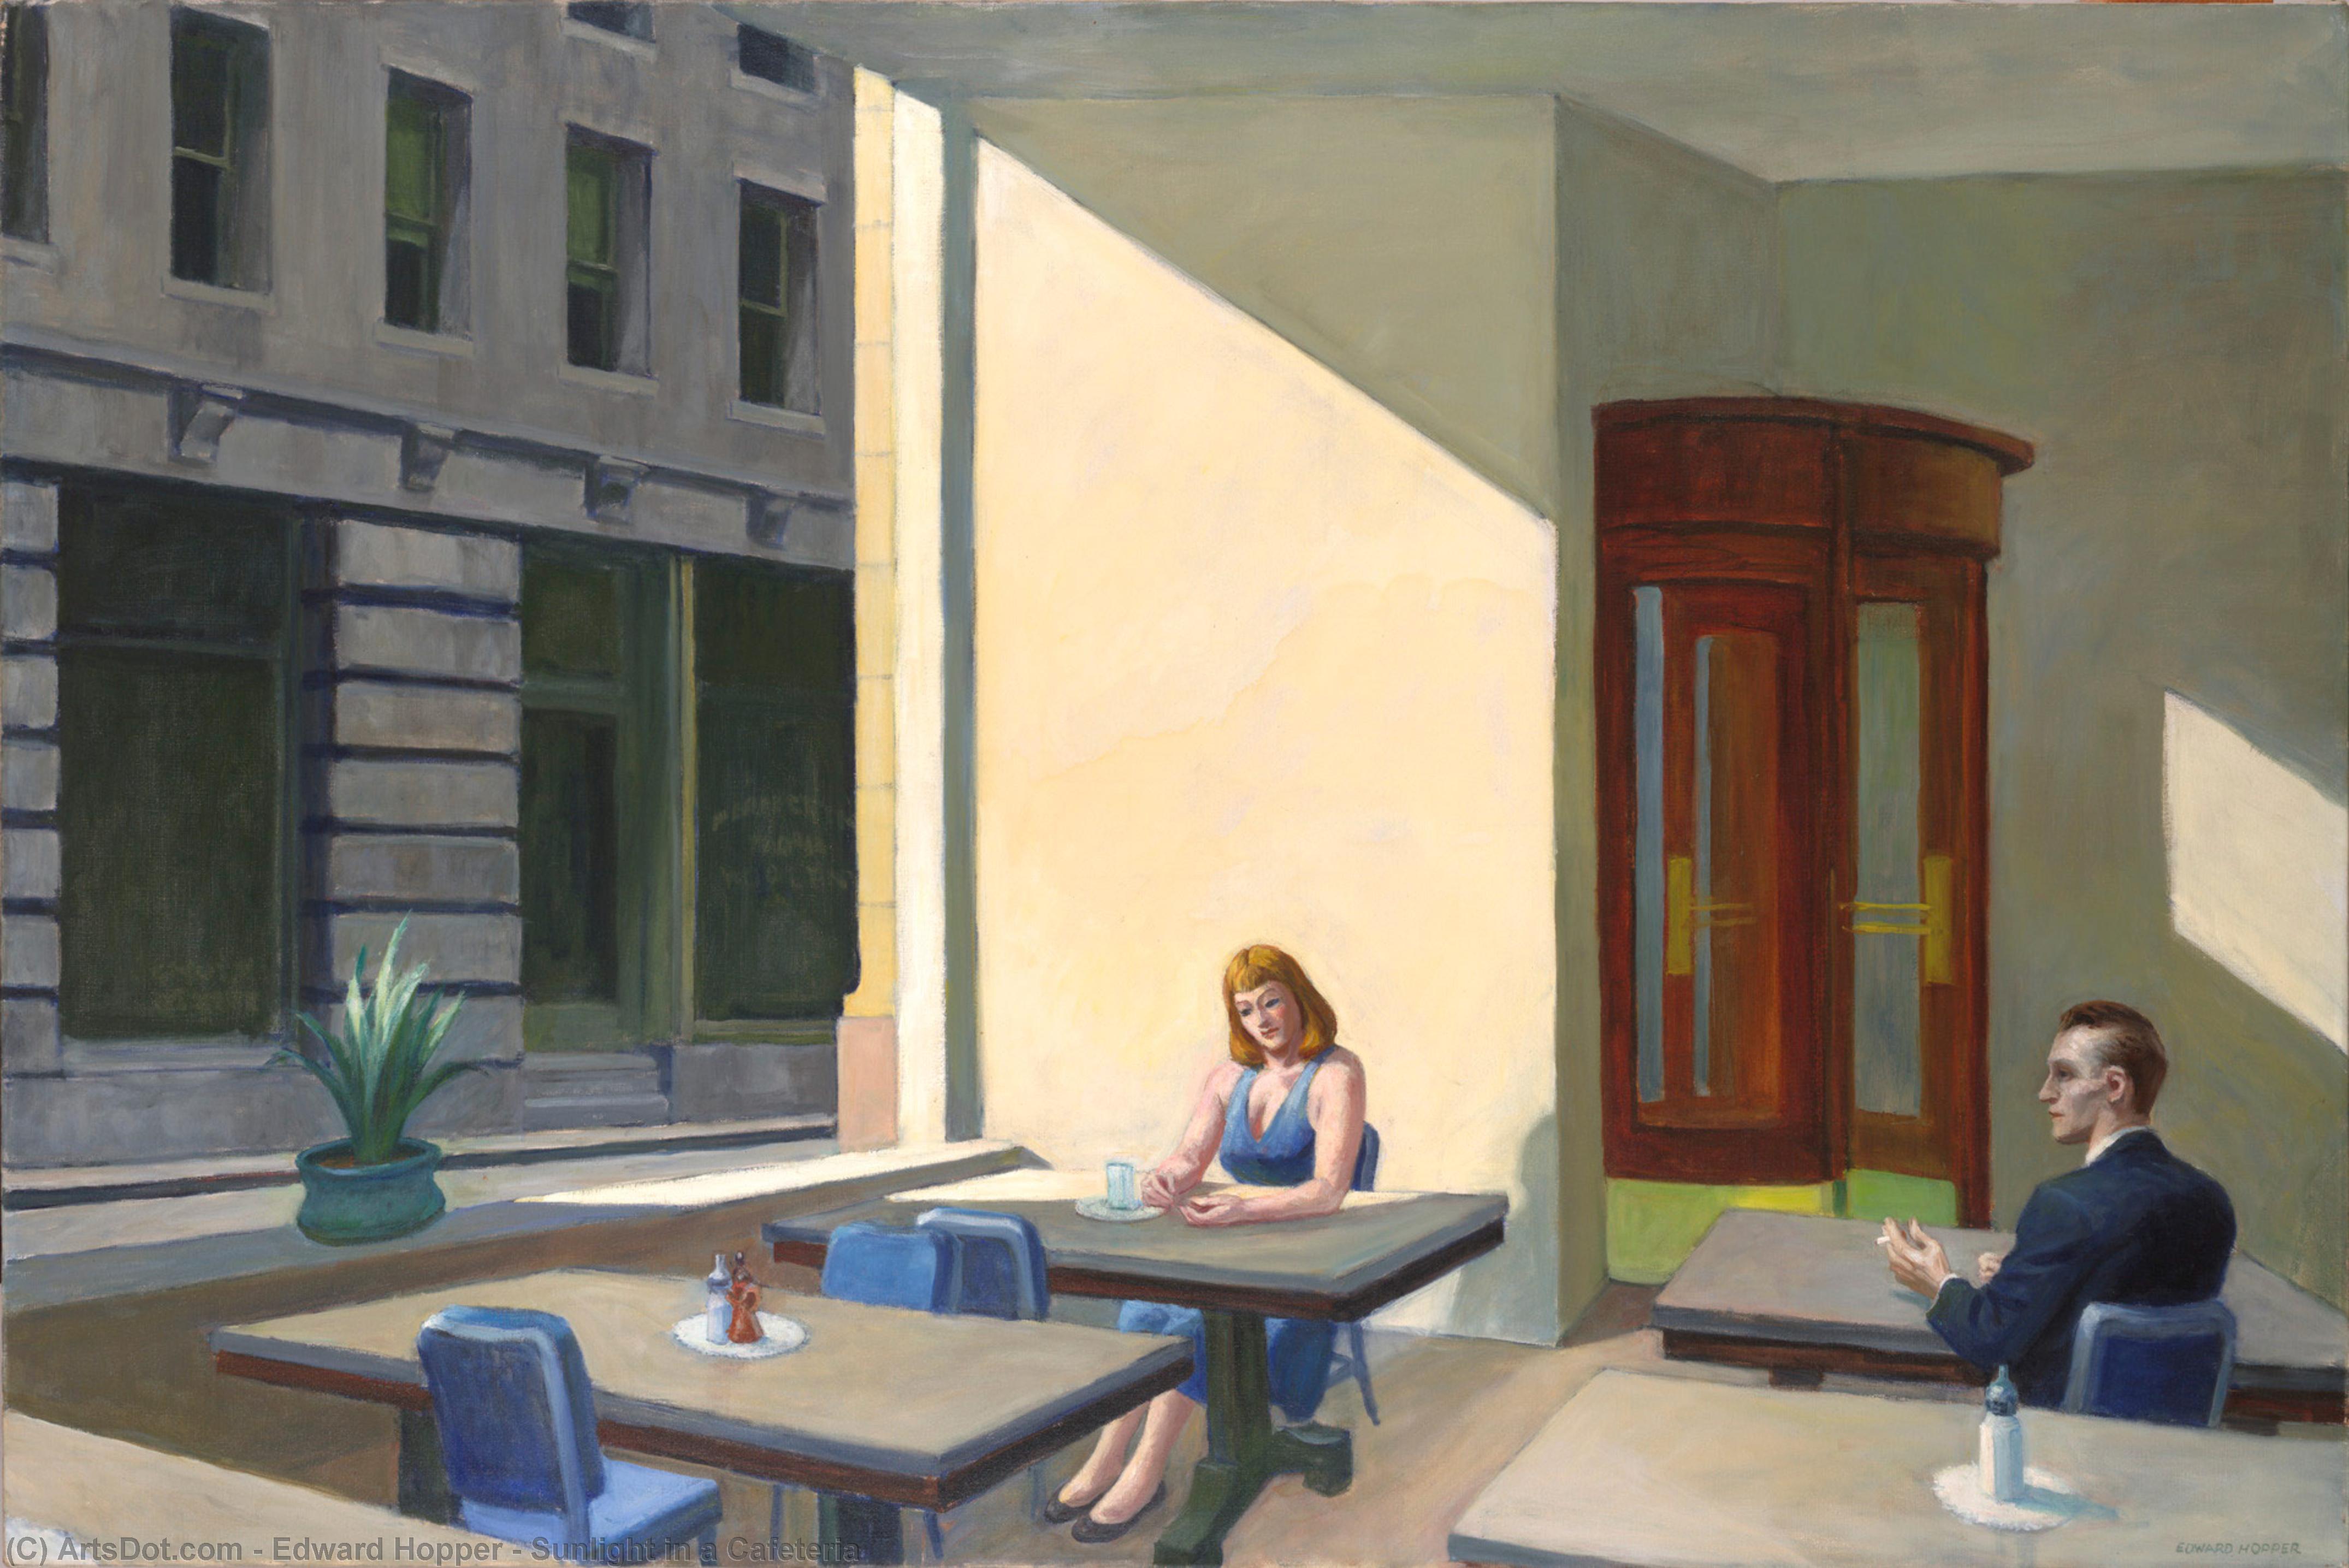 Ordinare Riproduzioni Di Quadri La luce del sole in una caffetteria, 1958 di Edward Hopper (Ispirato da) (1931-1967, United States) | ArtsDot.com